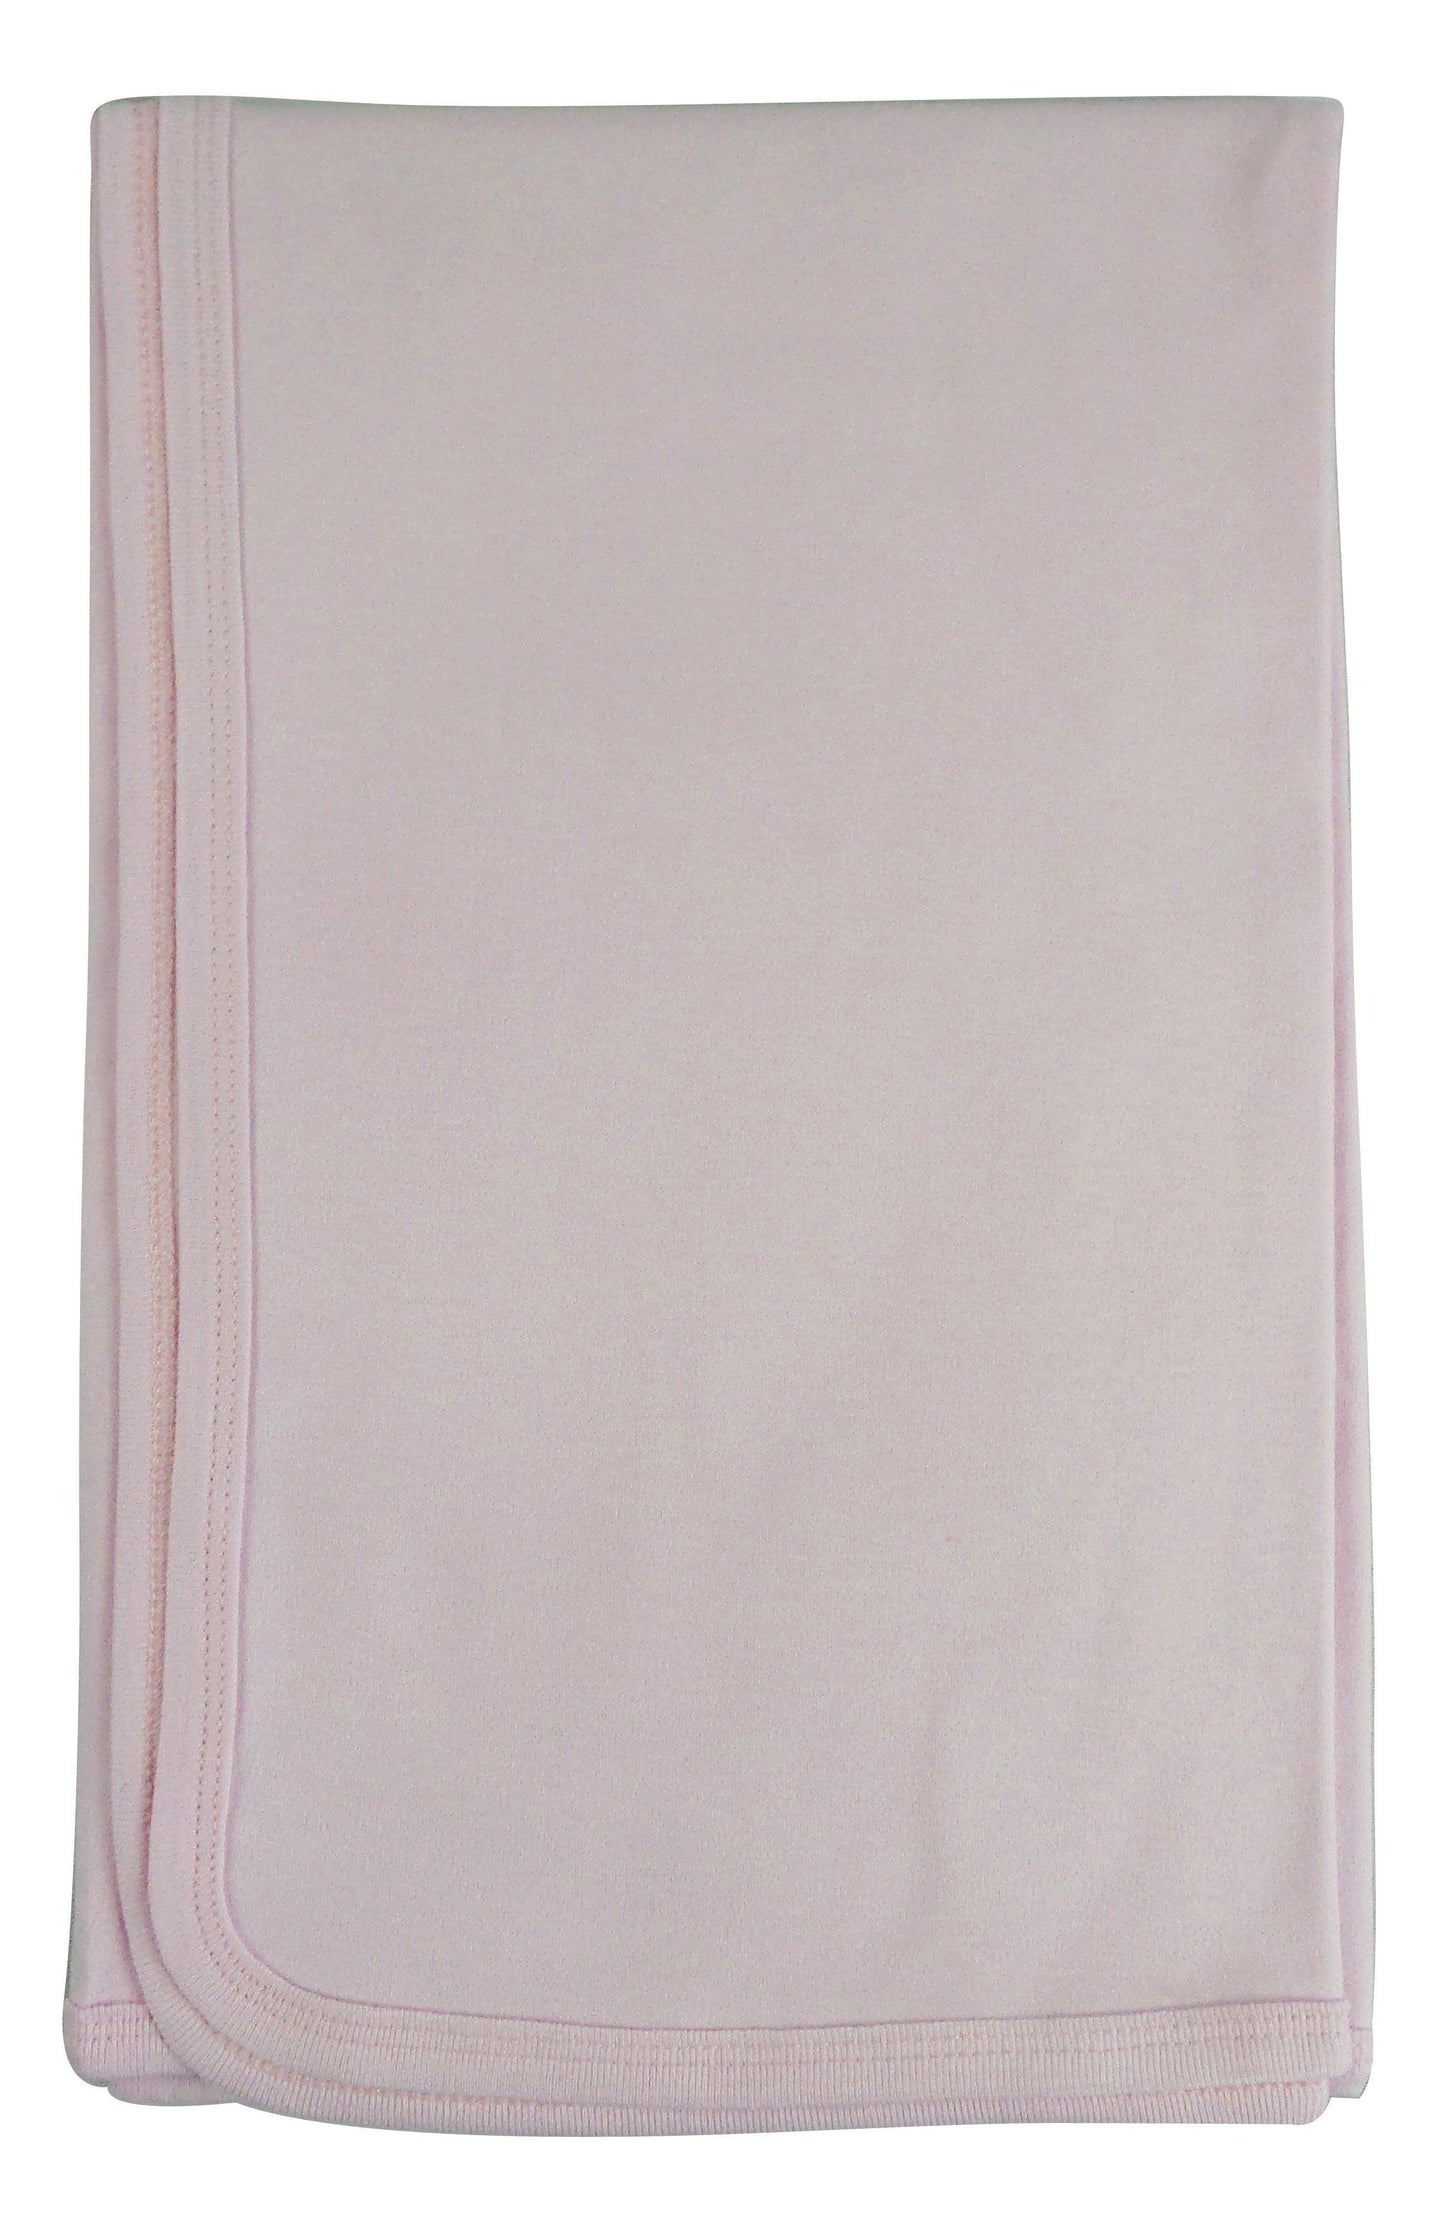 Pink Receiving Blanket 3200P - L & M Kee, LLC